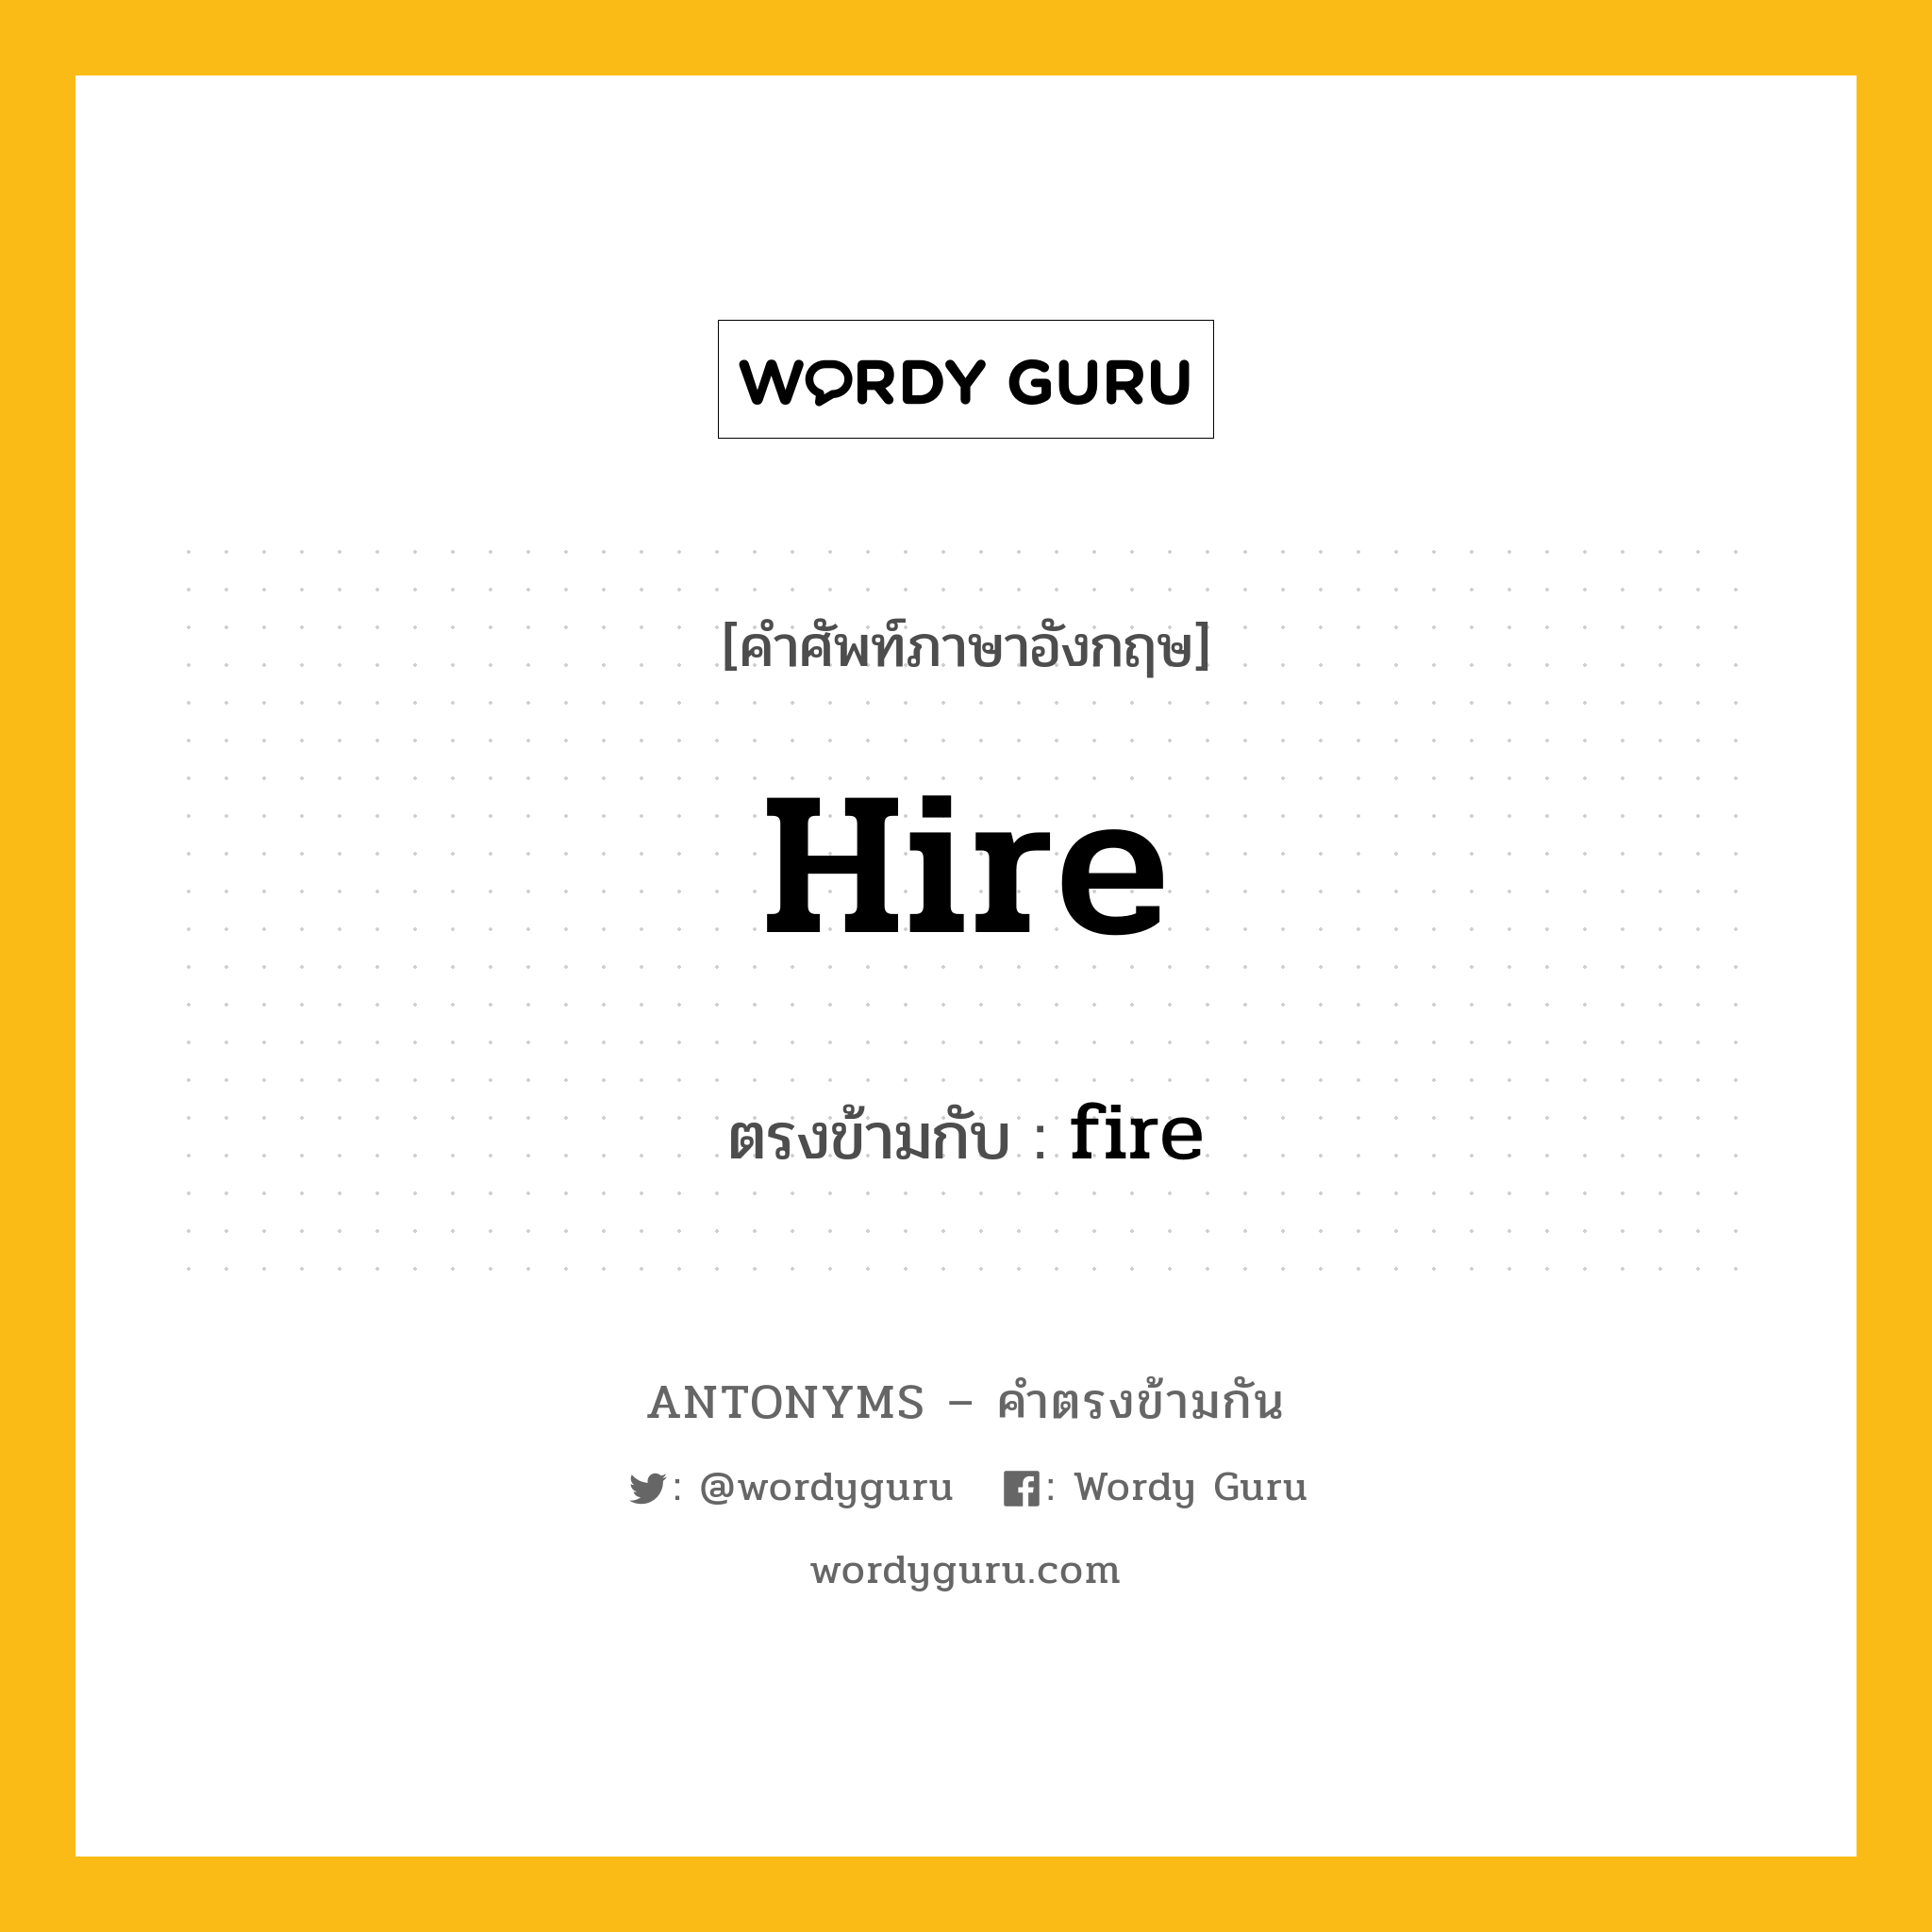 hire เป็นคำตรงข้ามกับคำไหนบ้าง?, คำศัพท์ภาษาอังกฤษ hire ตรงข้ามกับ fire หมวด fire